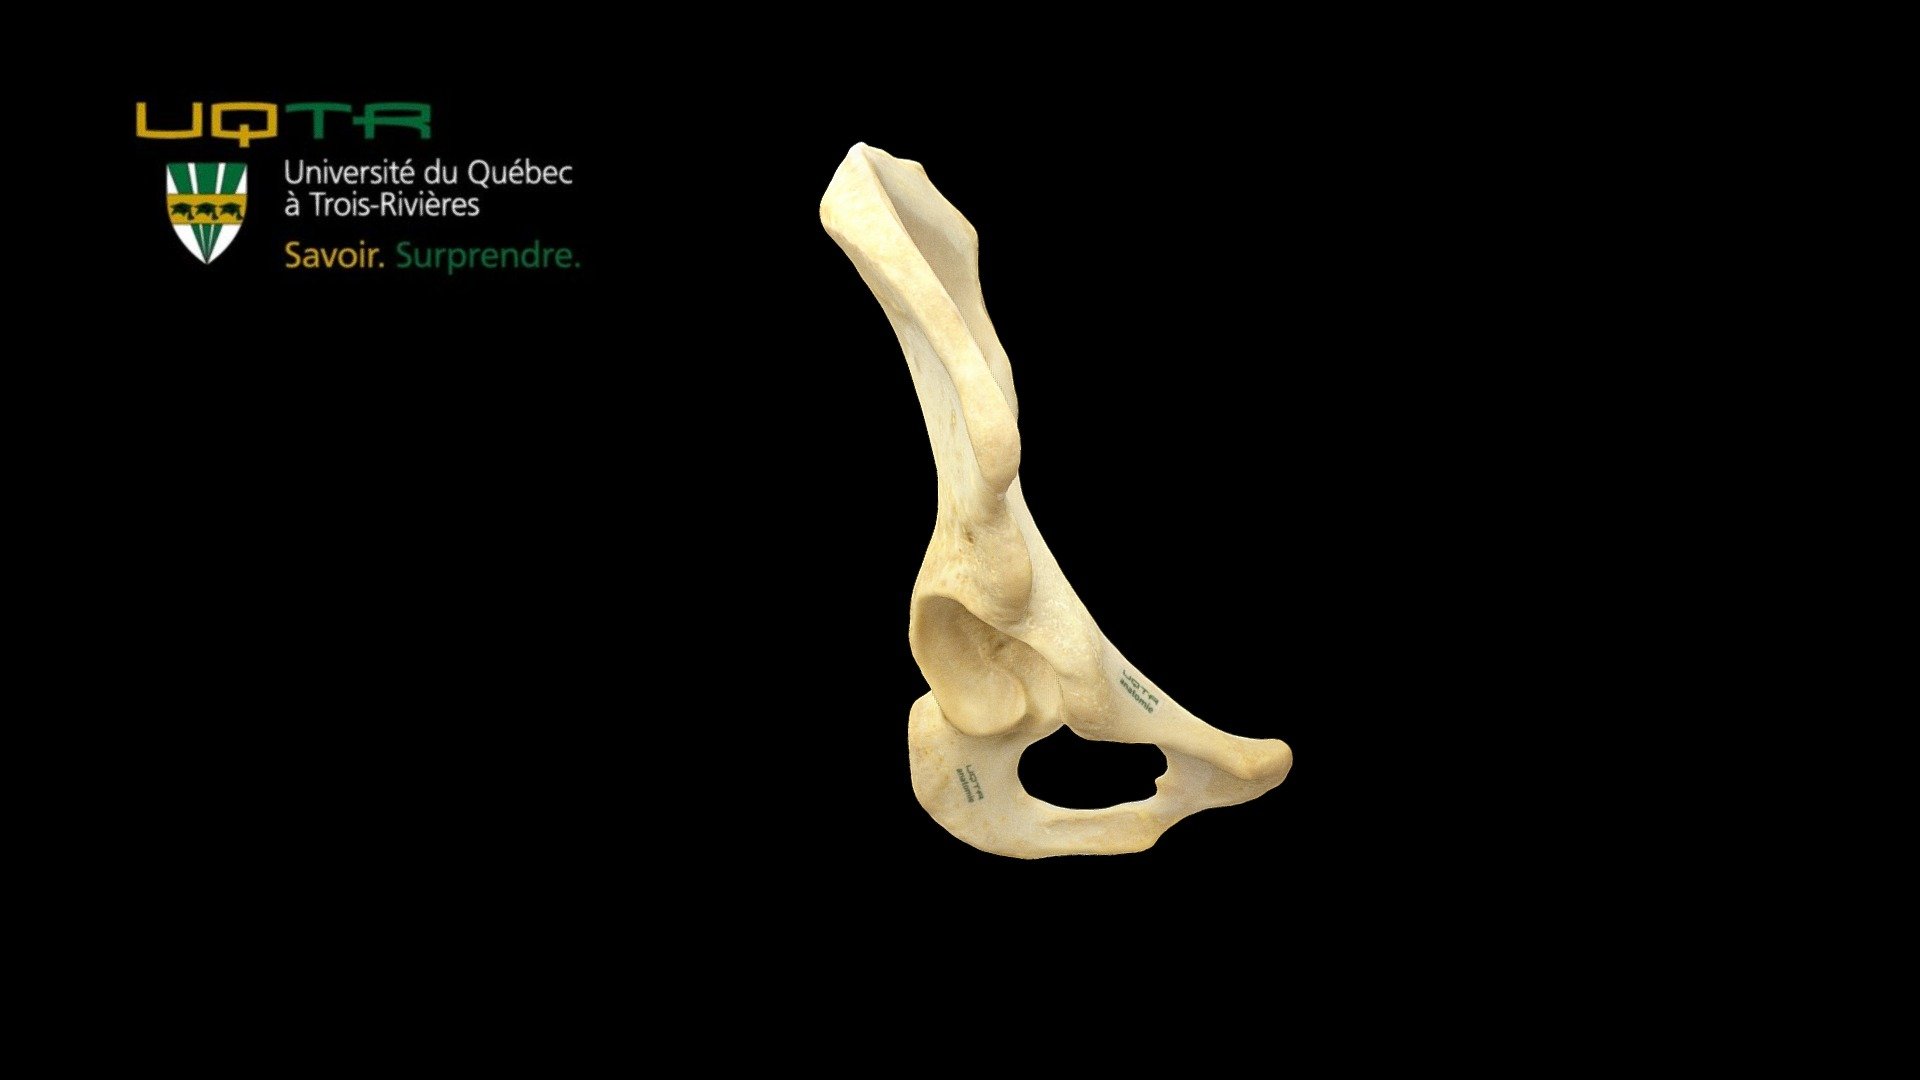 Os Coxal Droit / Right Coxal bone - 3D model by Anatomie UQTR - Anatomy UQTR (@AnatomieUQTR) 3d model